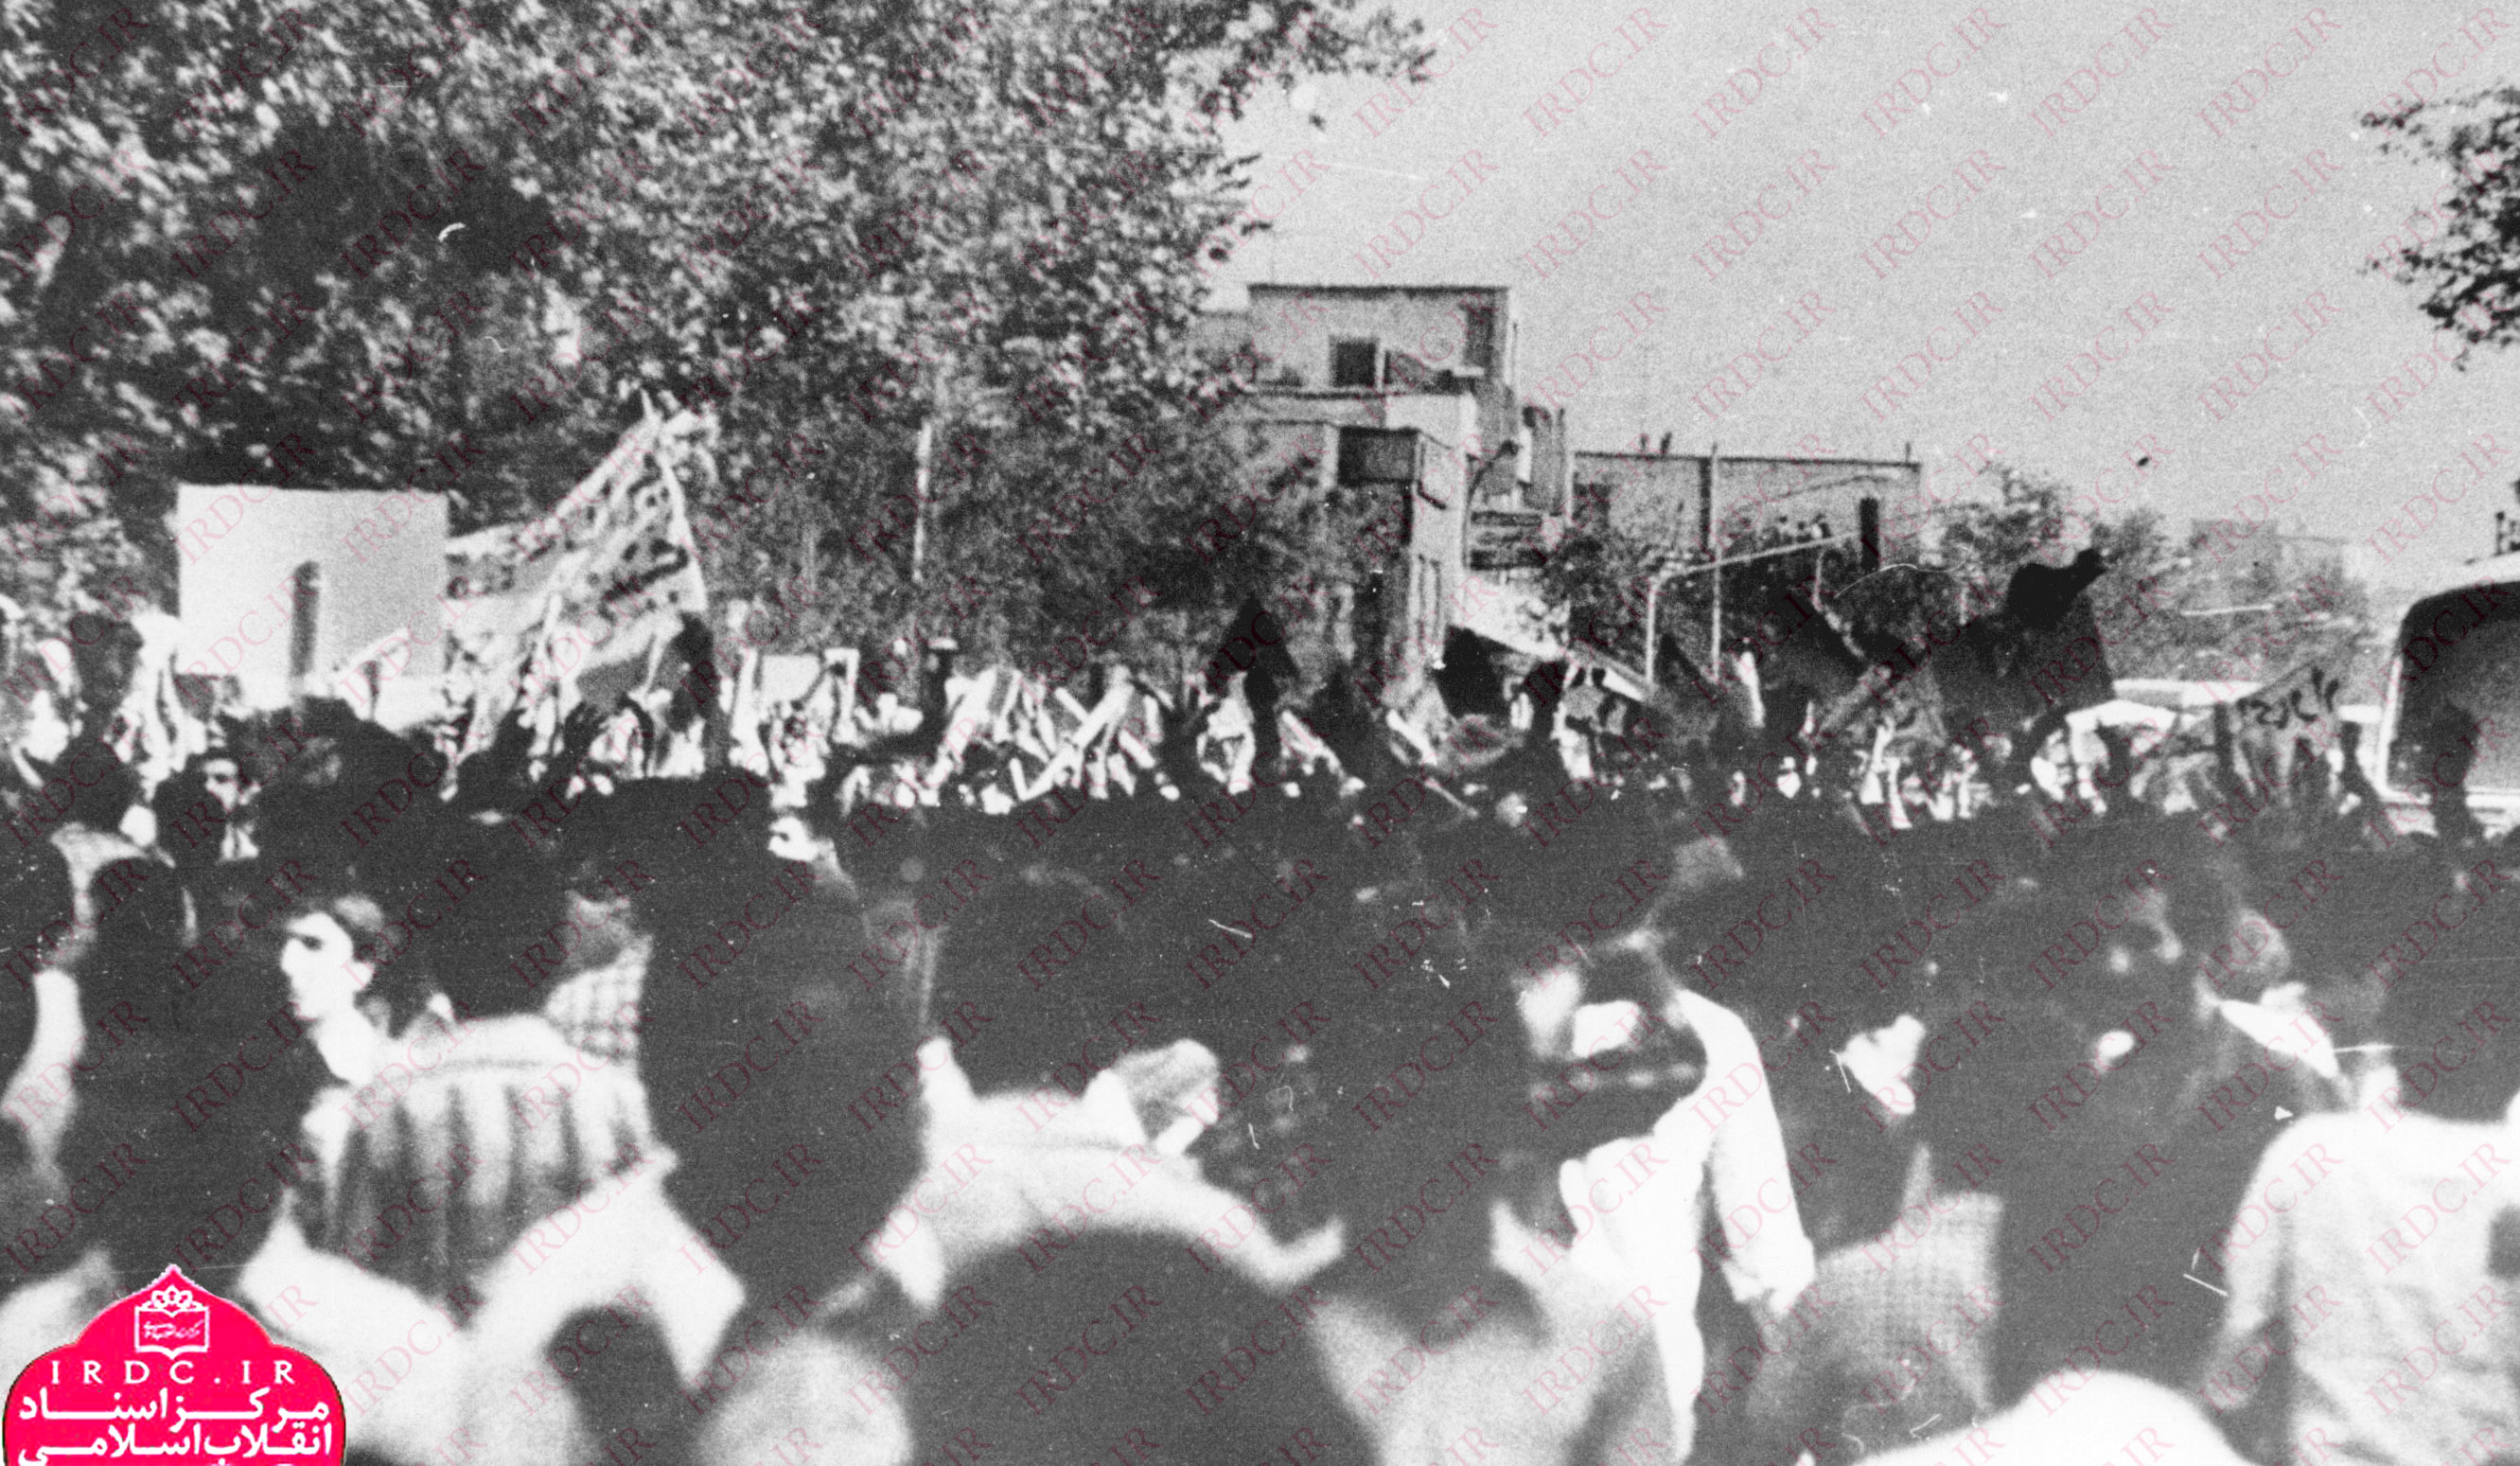 تصاویر قیام 17 شهریور و کشتار مردم توسط رژیم پهلوی